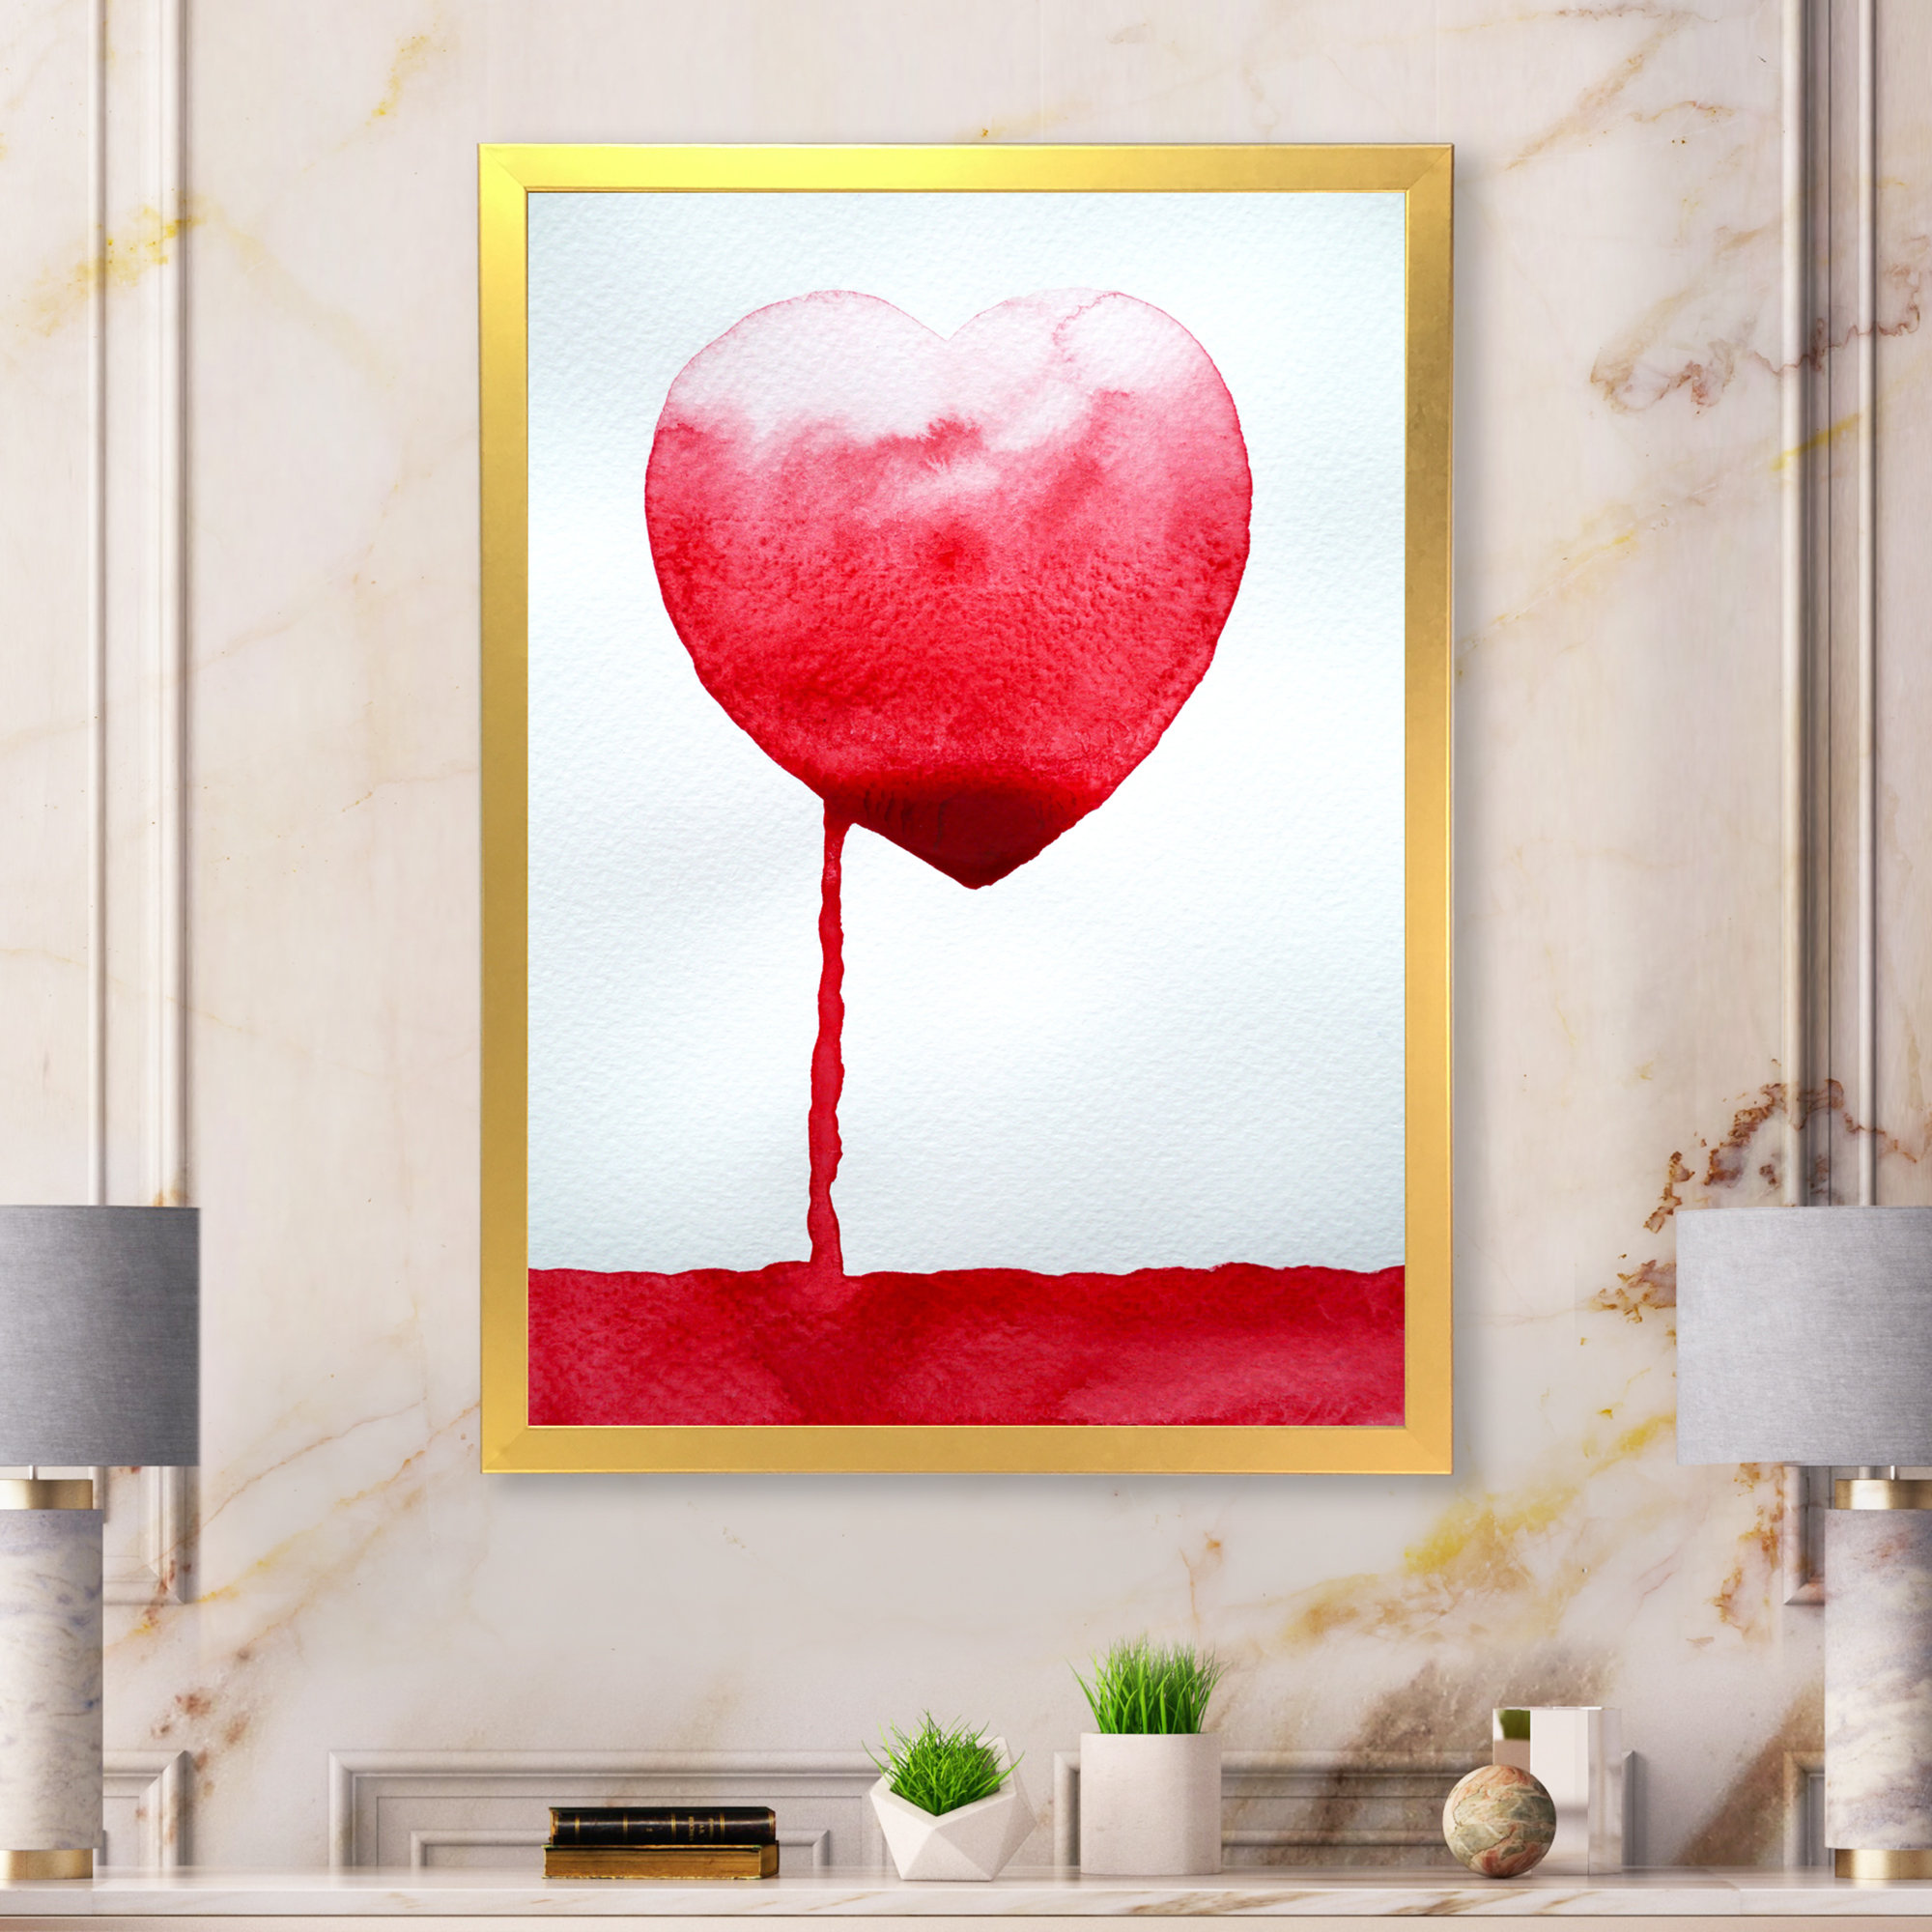 Red Heart Leak In Ocean Of Love - Modern Canvas Wall Decor